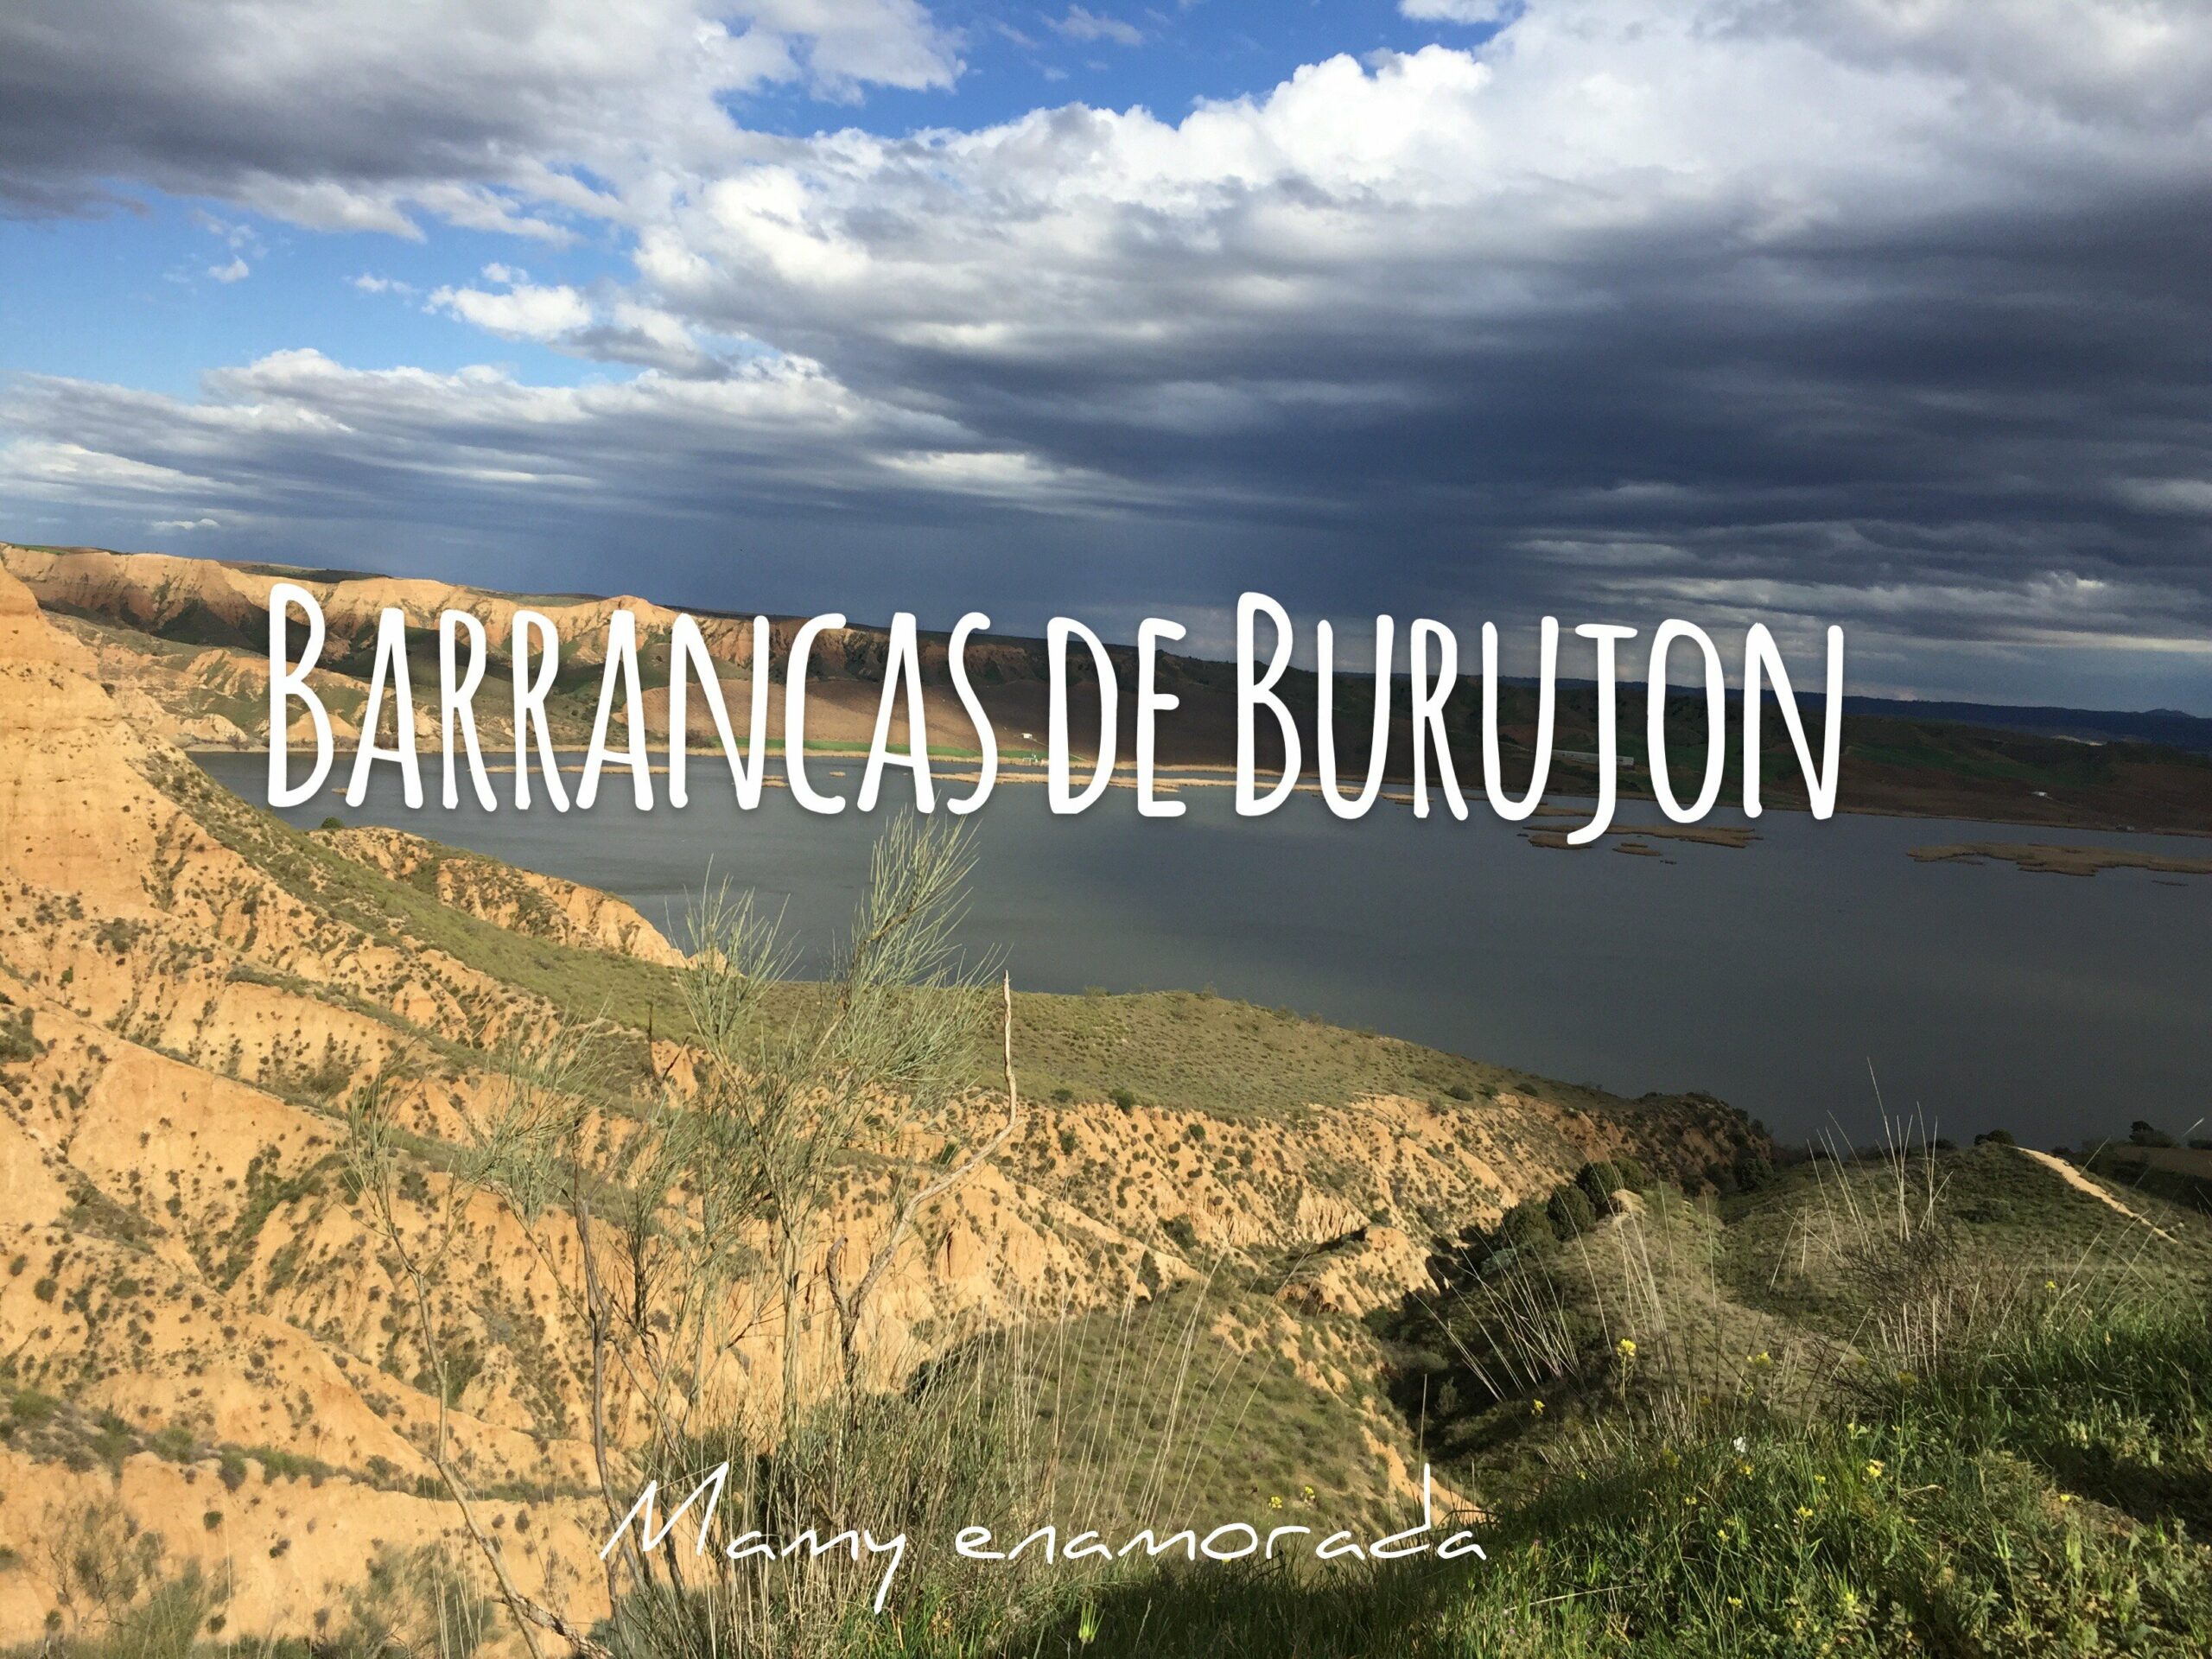 Barrancas de Burujón